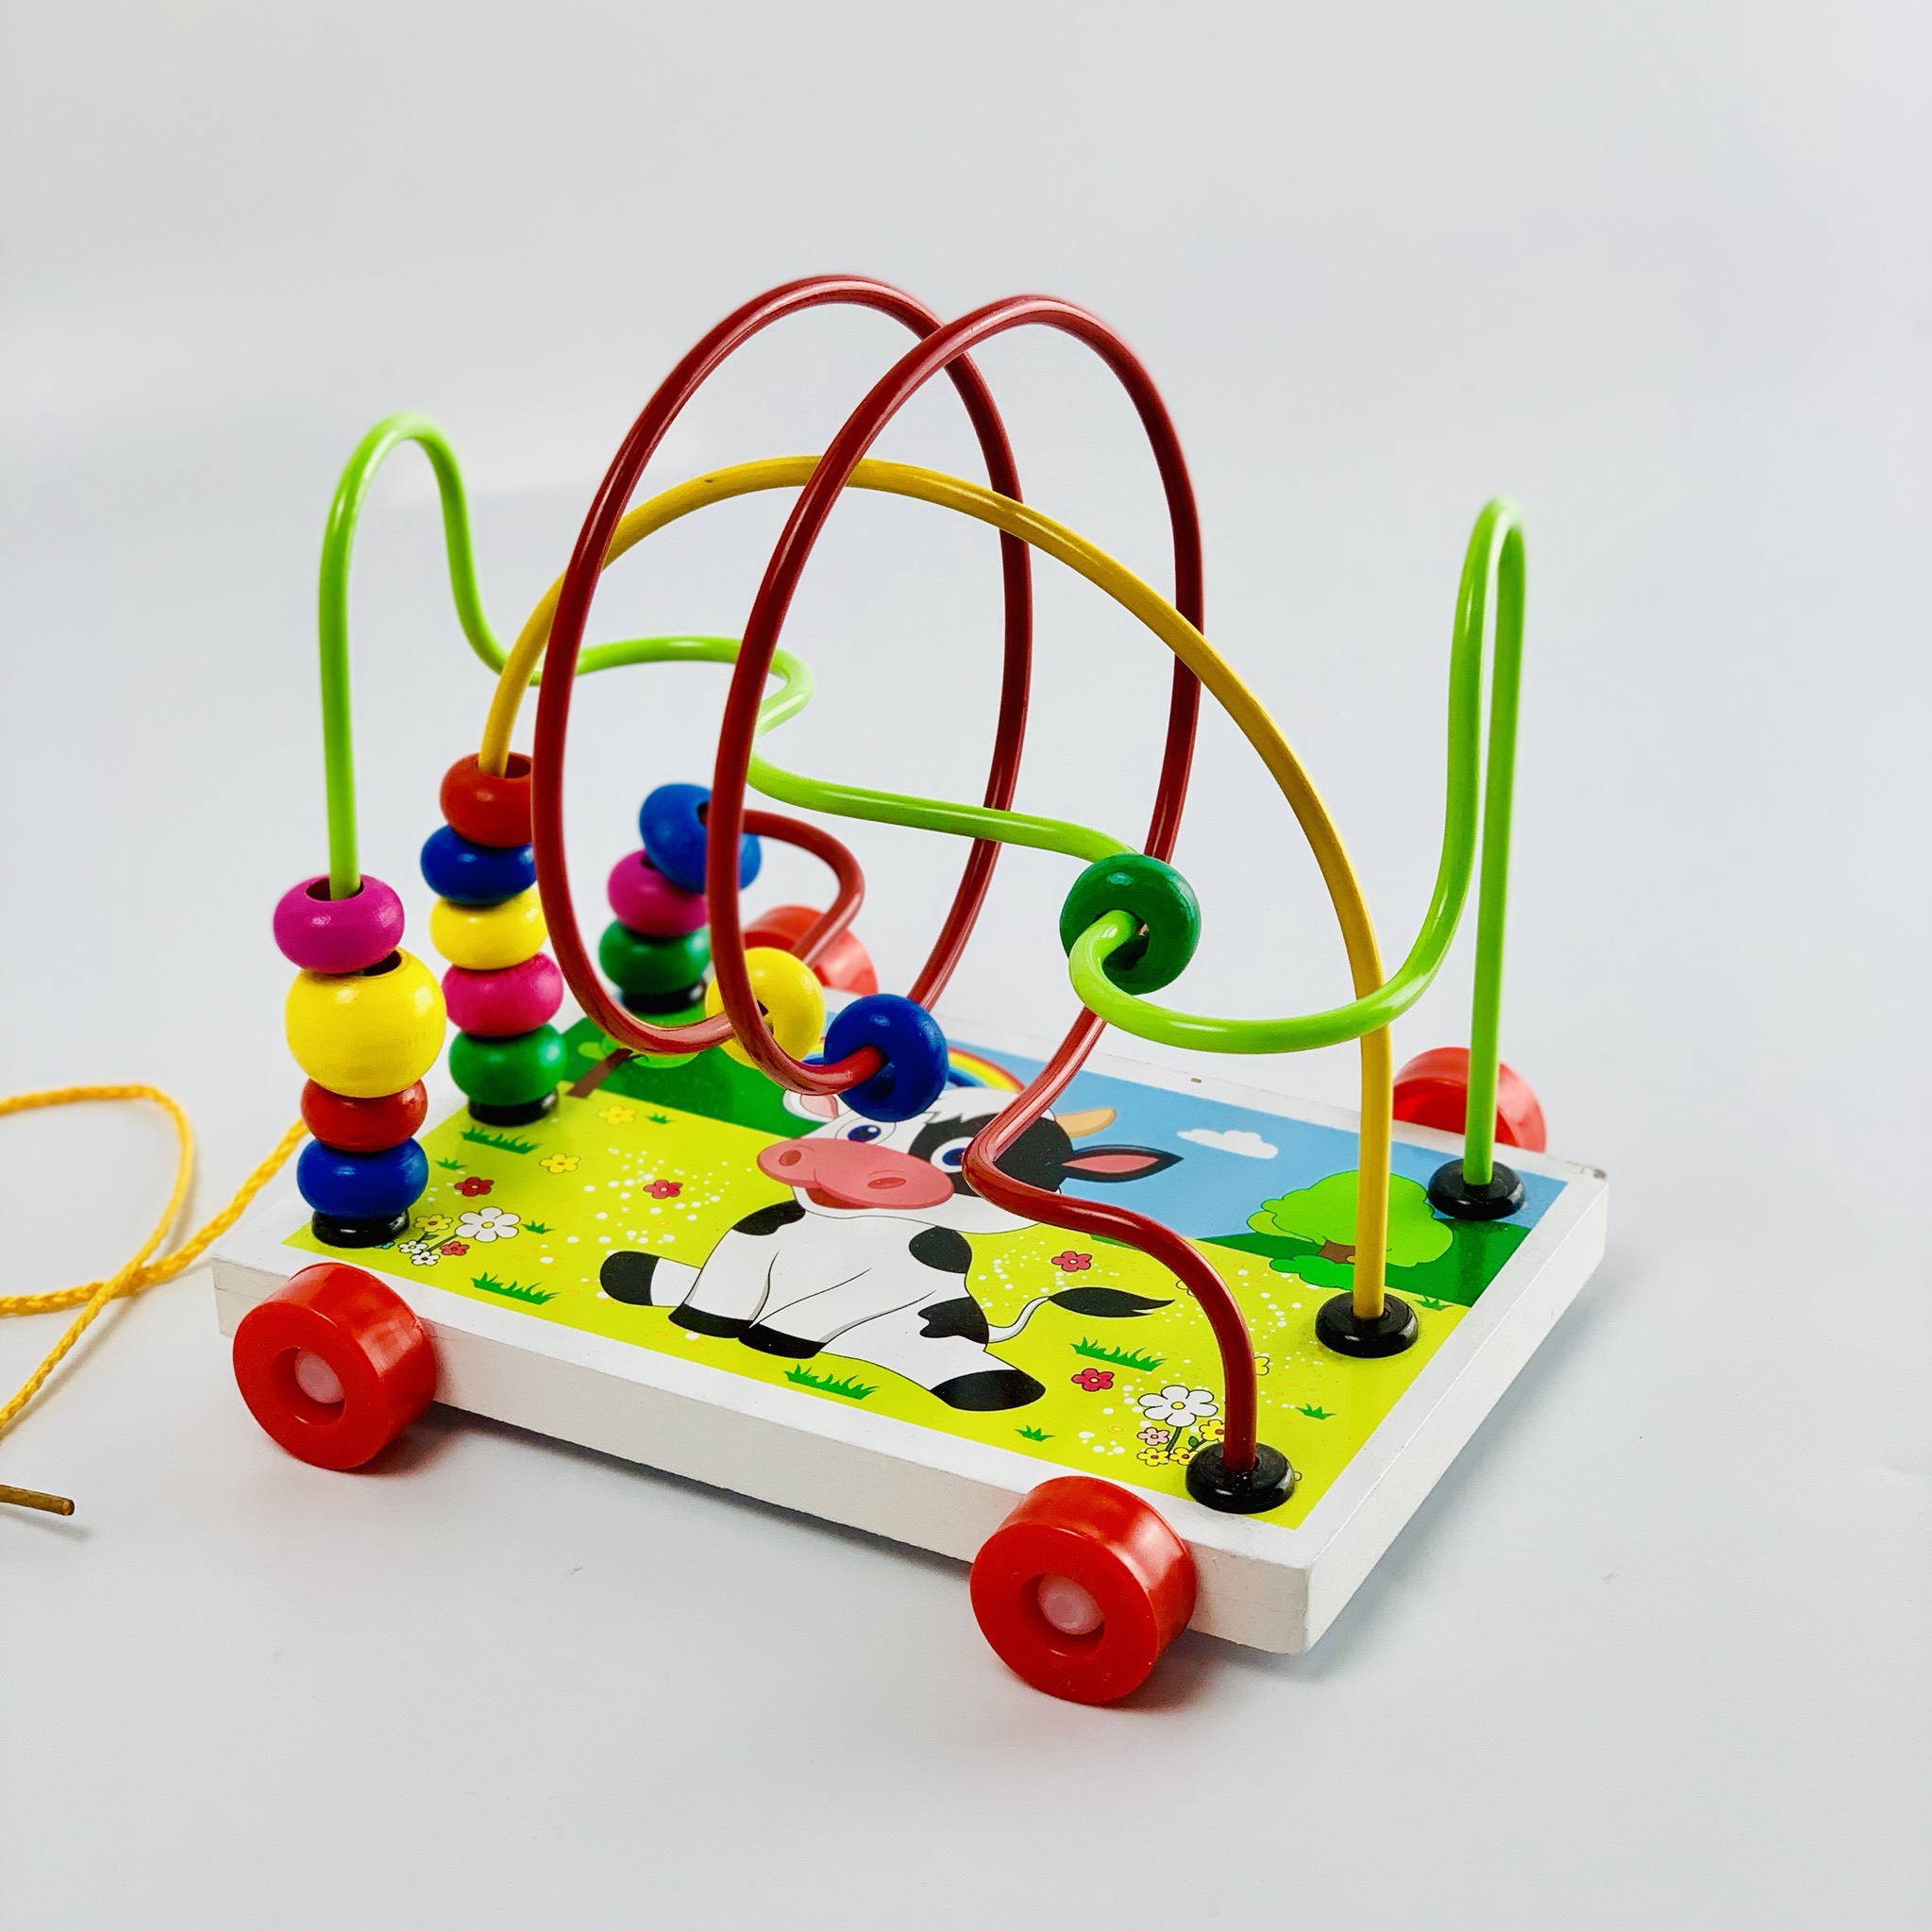 Xe xâu chuỗi luồn hạt gỗ, đồ chơi an toàn cho bé giúp trẻ kích thích giác quan hỗ trợ phát triển trí tuệ bằng đồ chơi thông minh